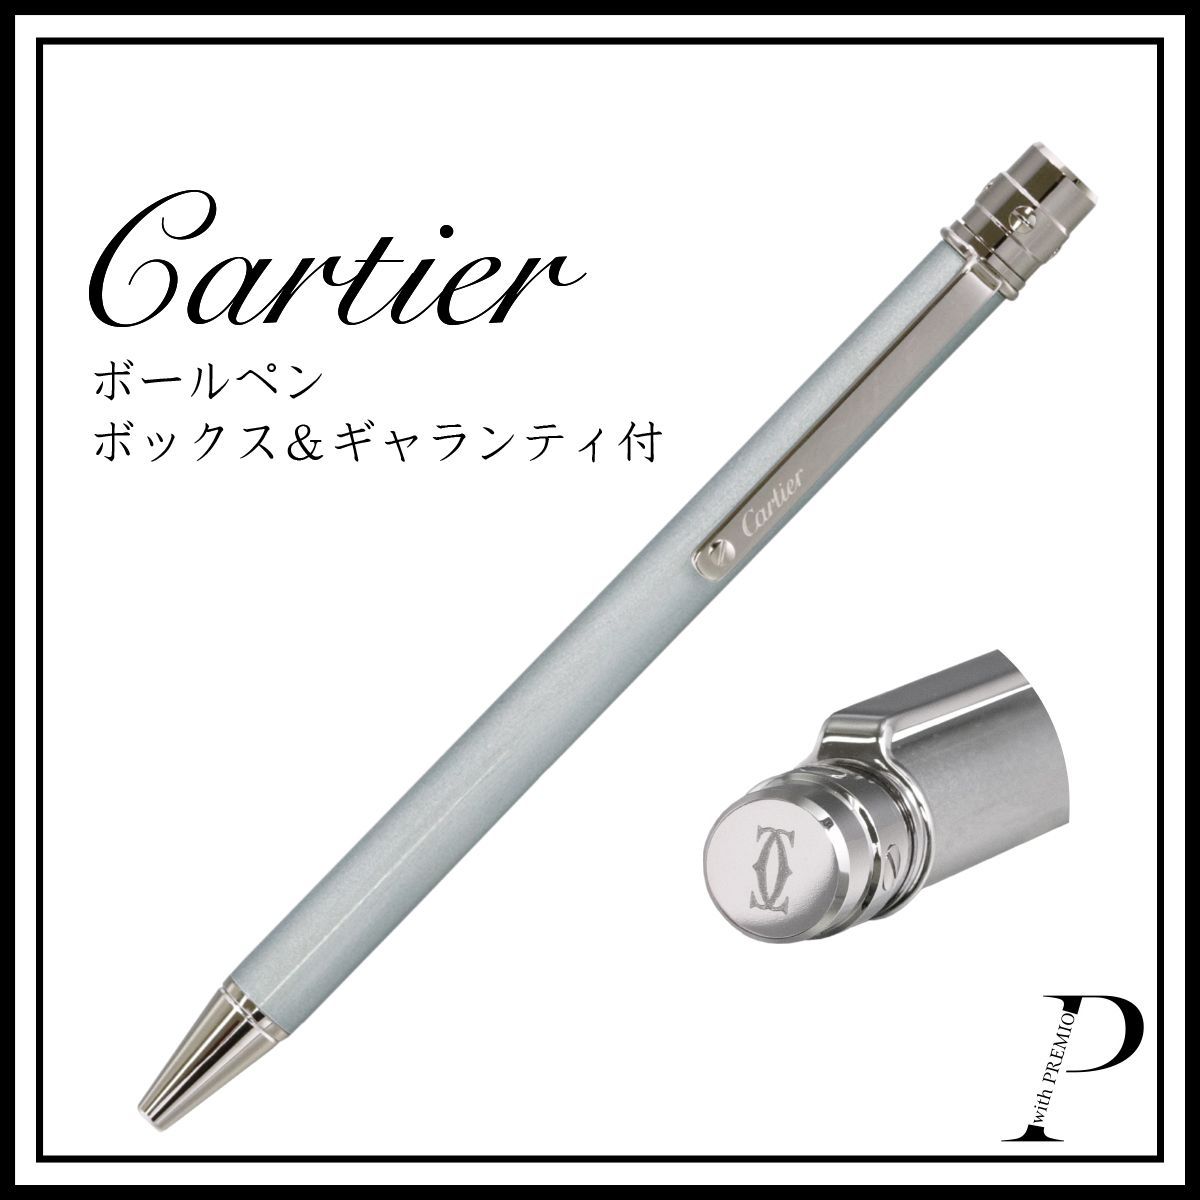 サイズ長さ125mm直径8mmCARTIER ST150191（OP000144） カルティエ ボールペン